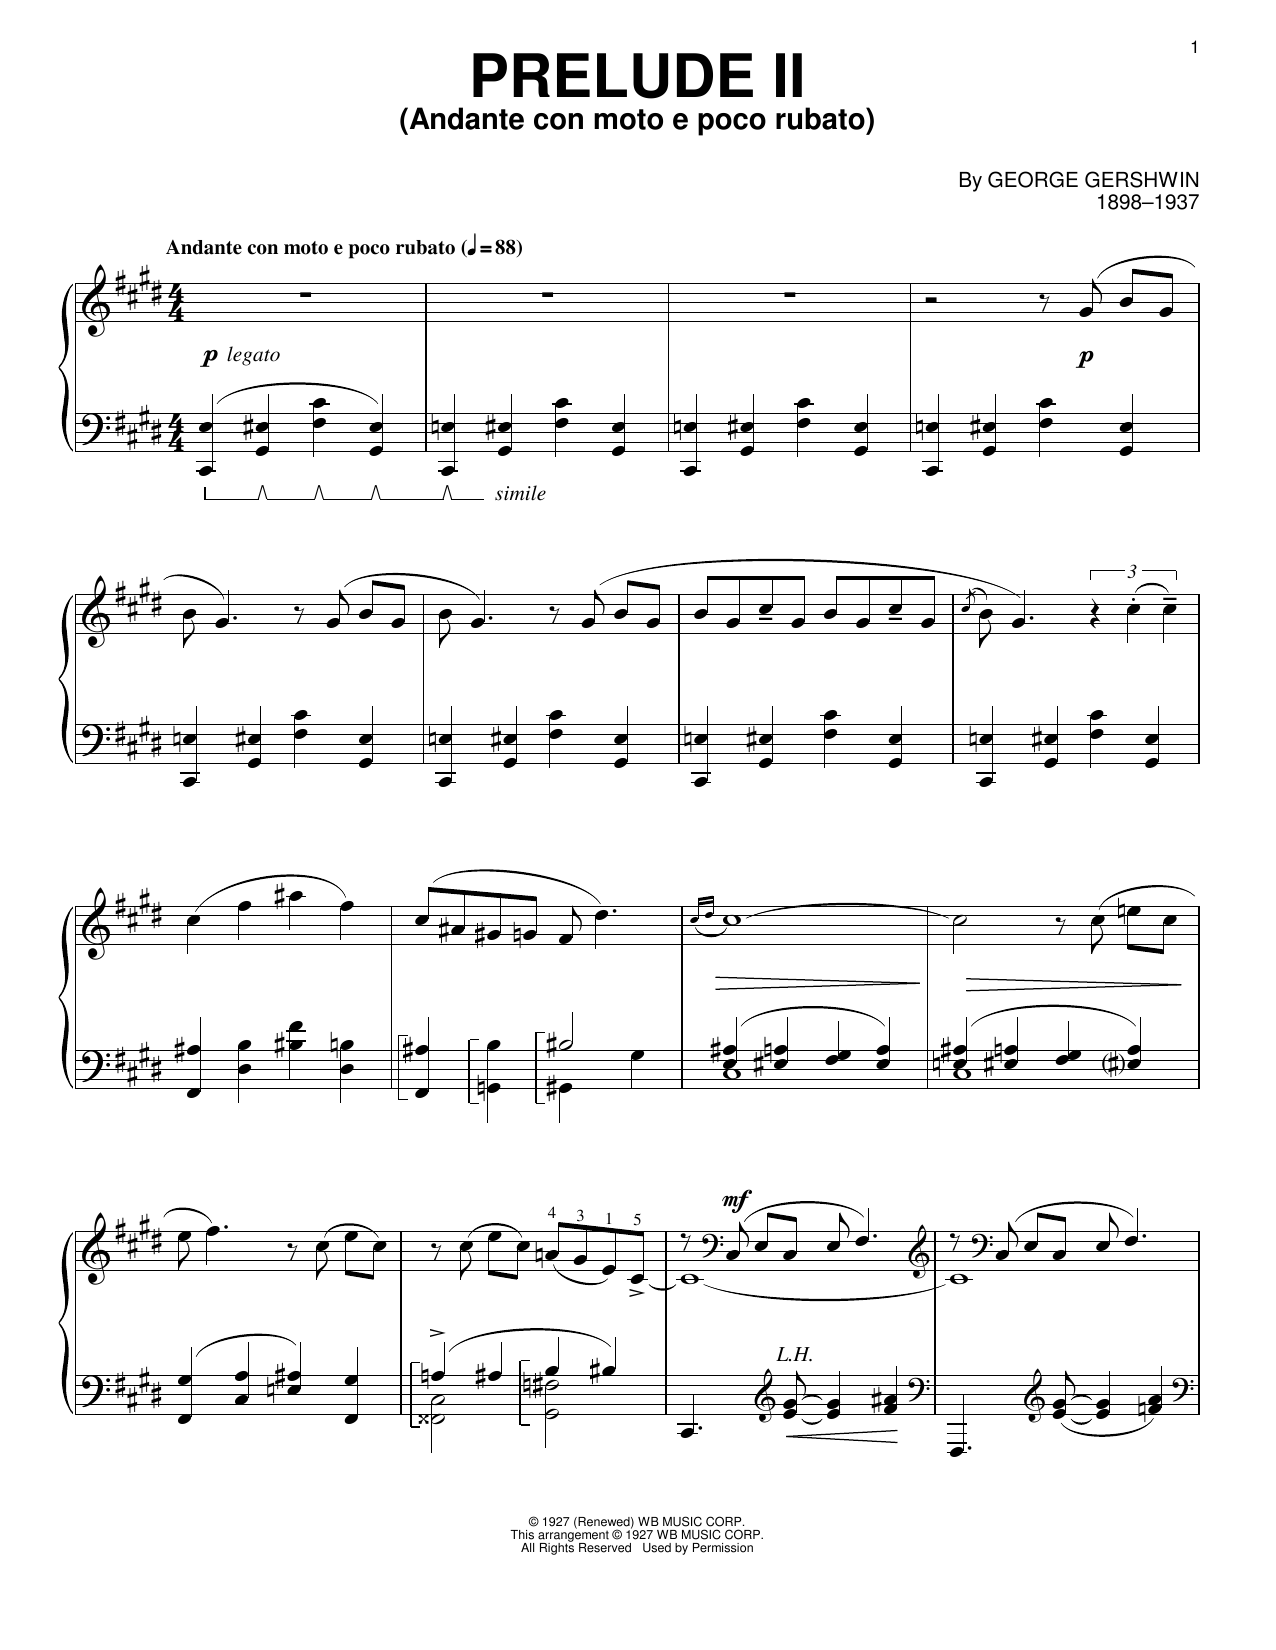 George Gershwin Prelude II (Andante Con Moto E Poco Rubato) Sheet Music Notes & Chords for Piano Solo - Download or Print PDF